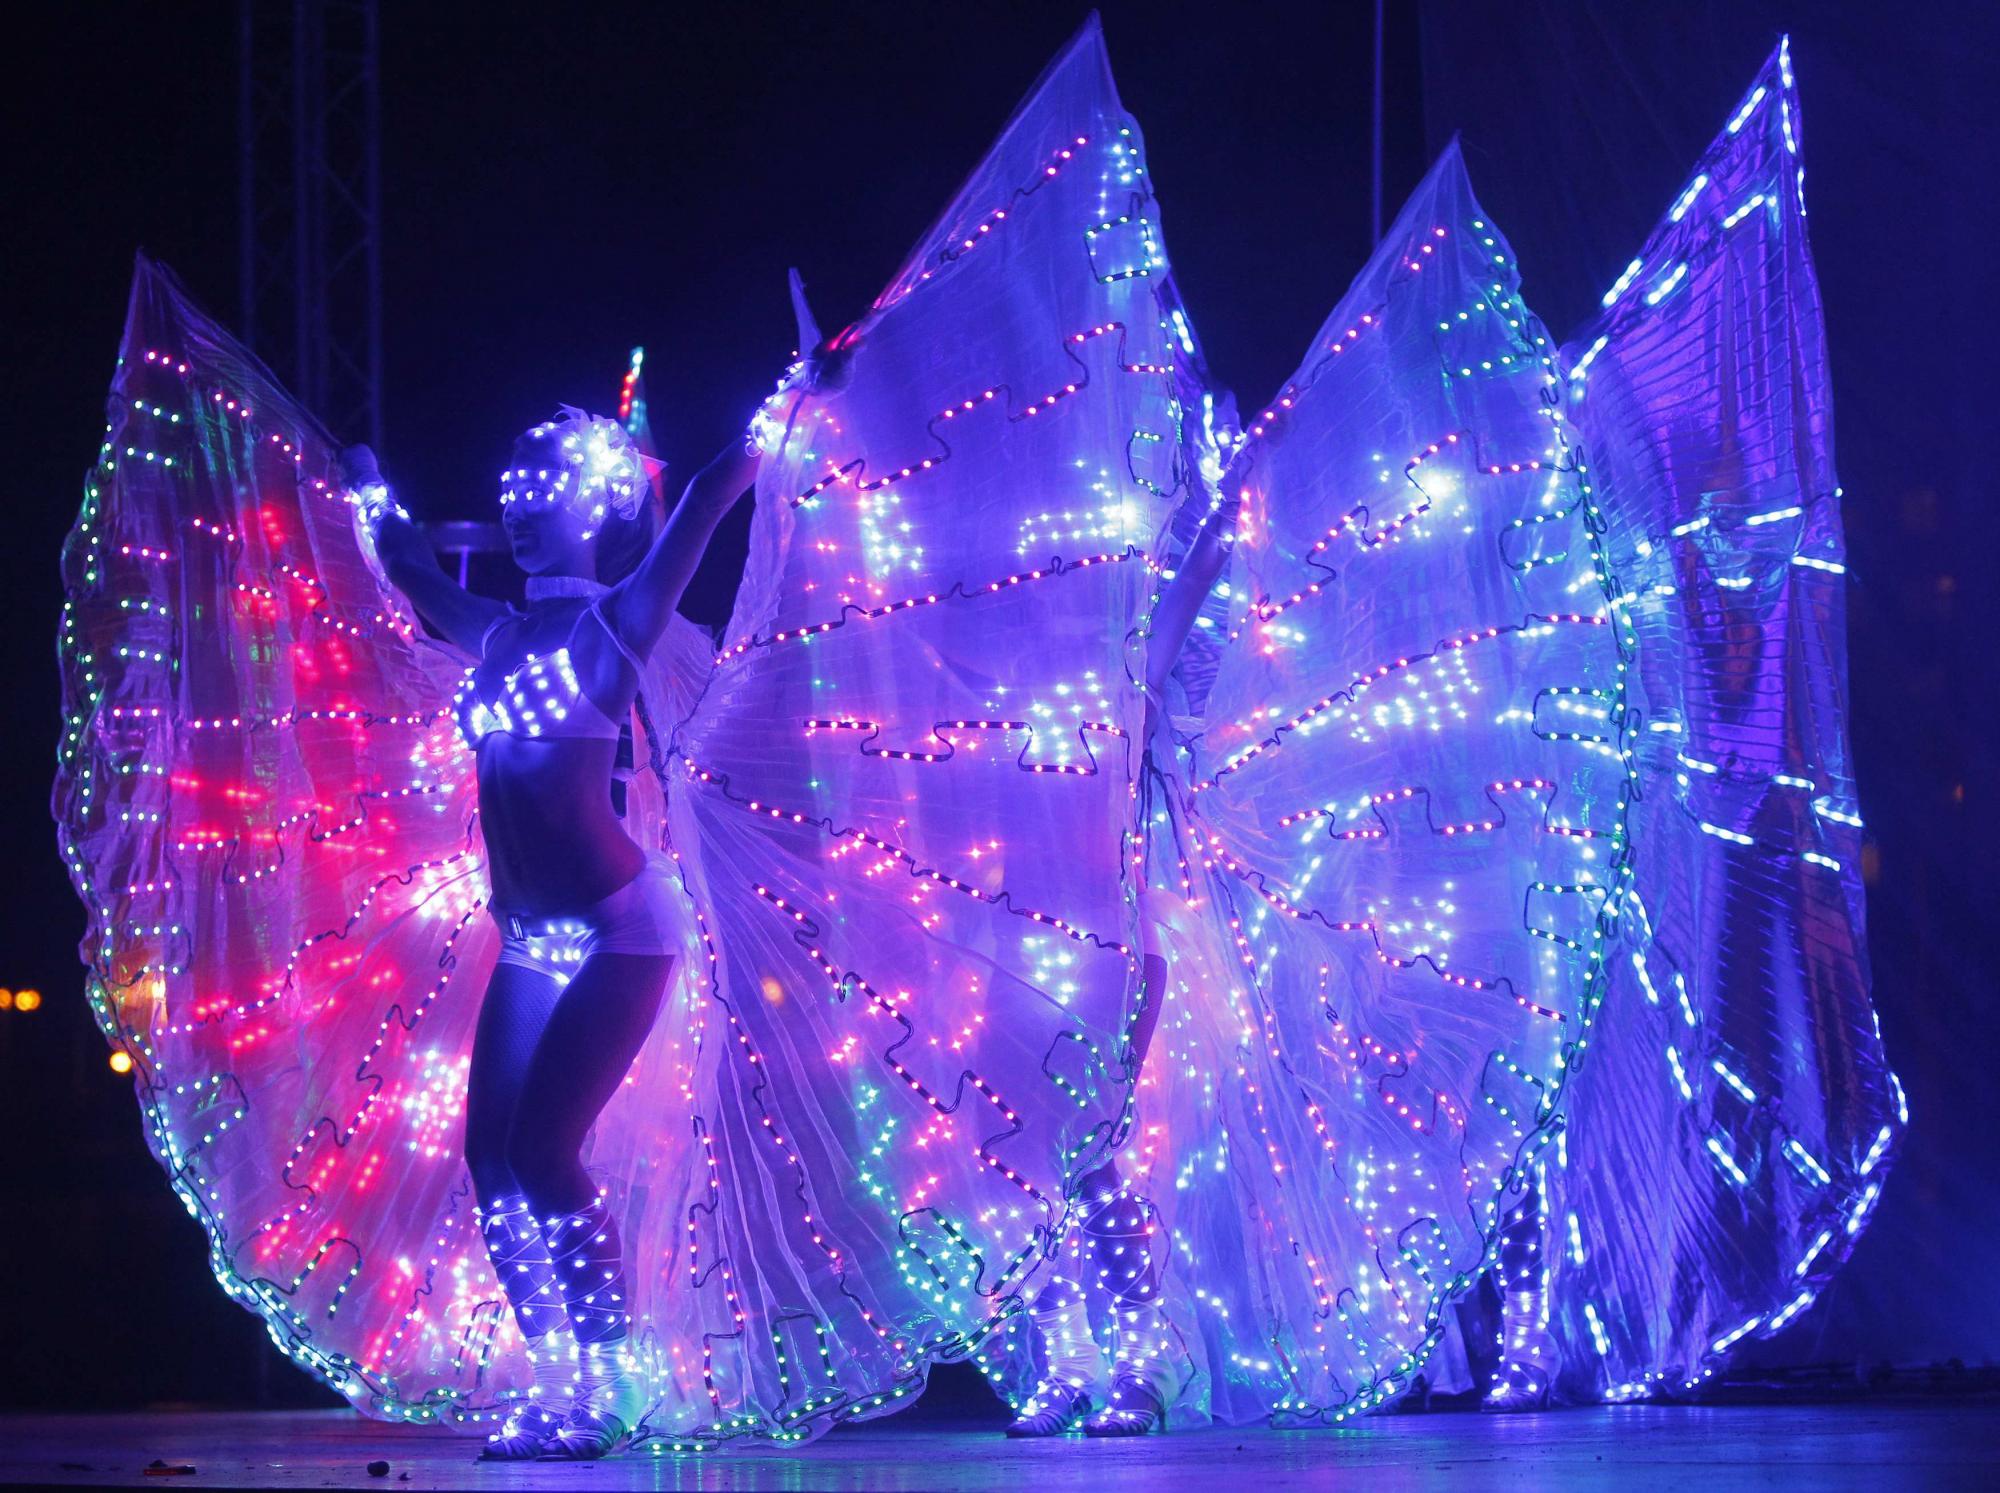 乌克兰基辅“火节”盛大开幕 多国艺人尽显超群技艺